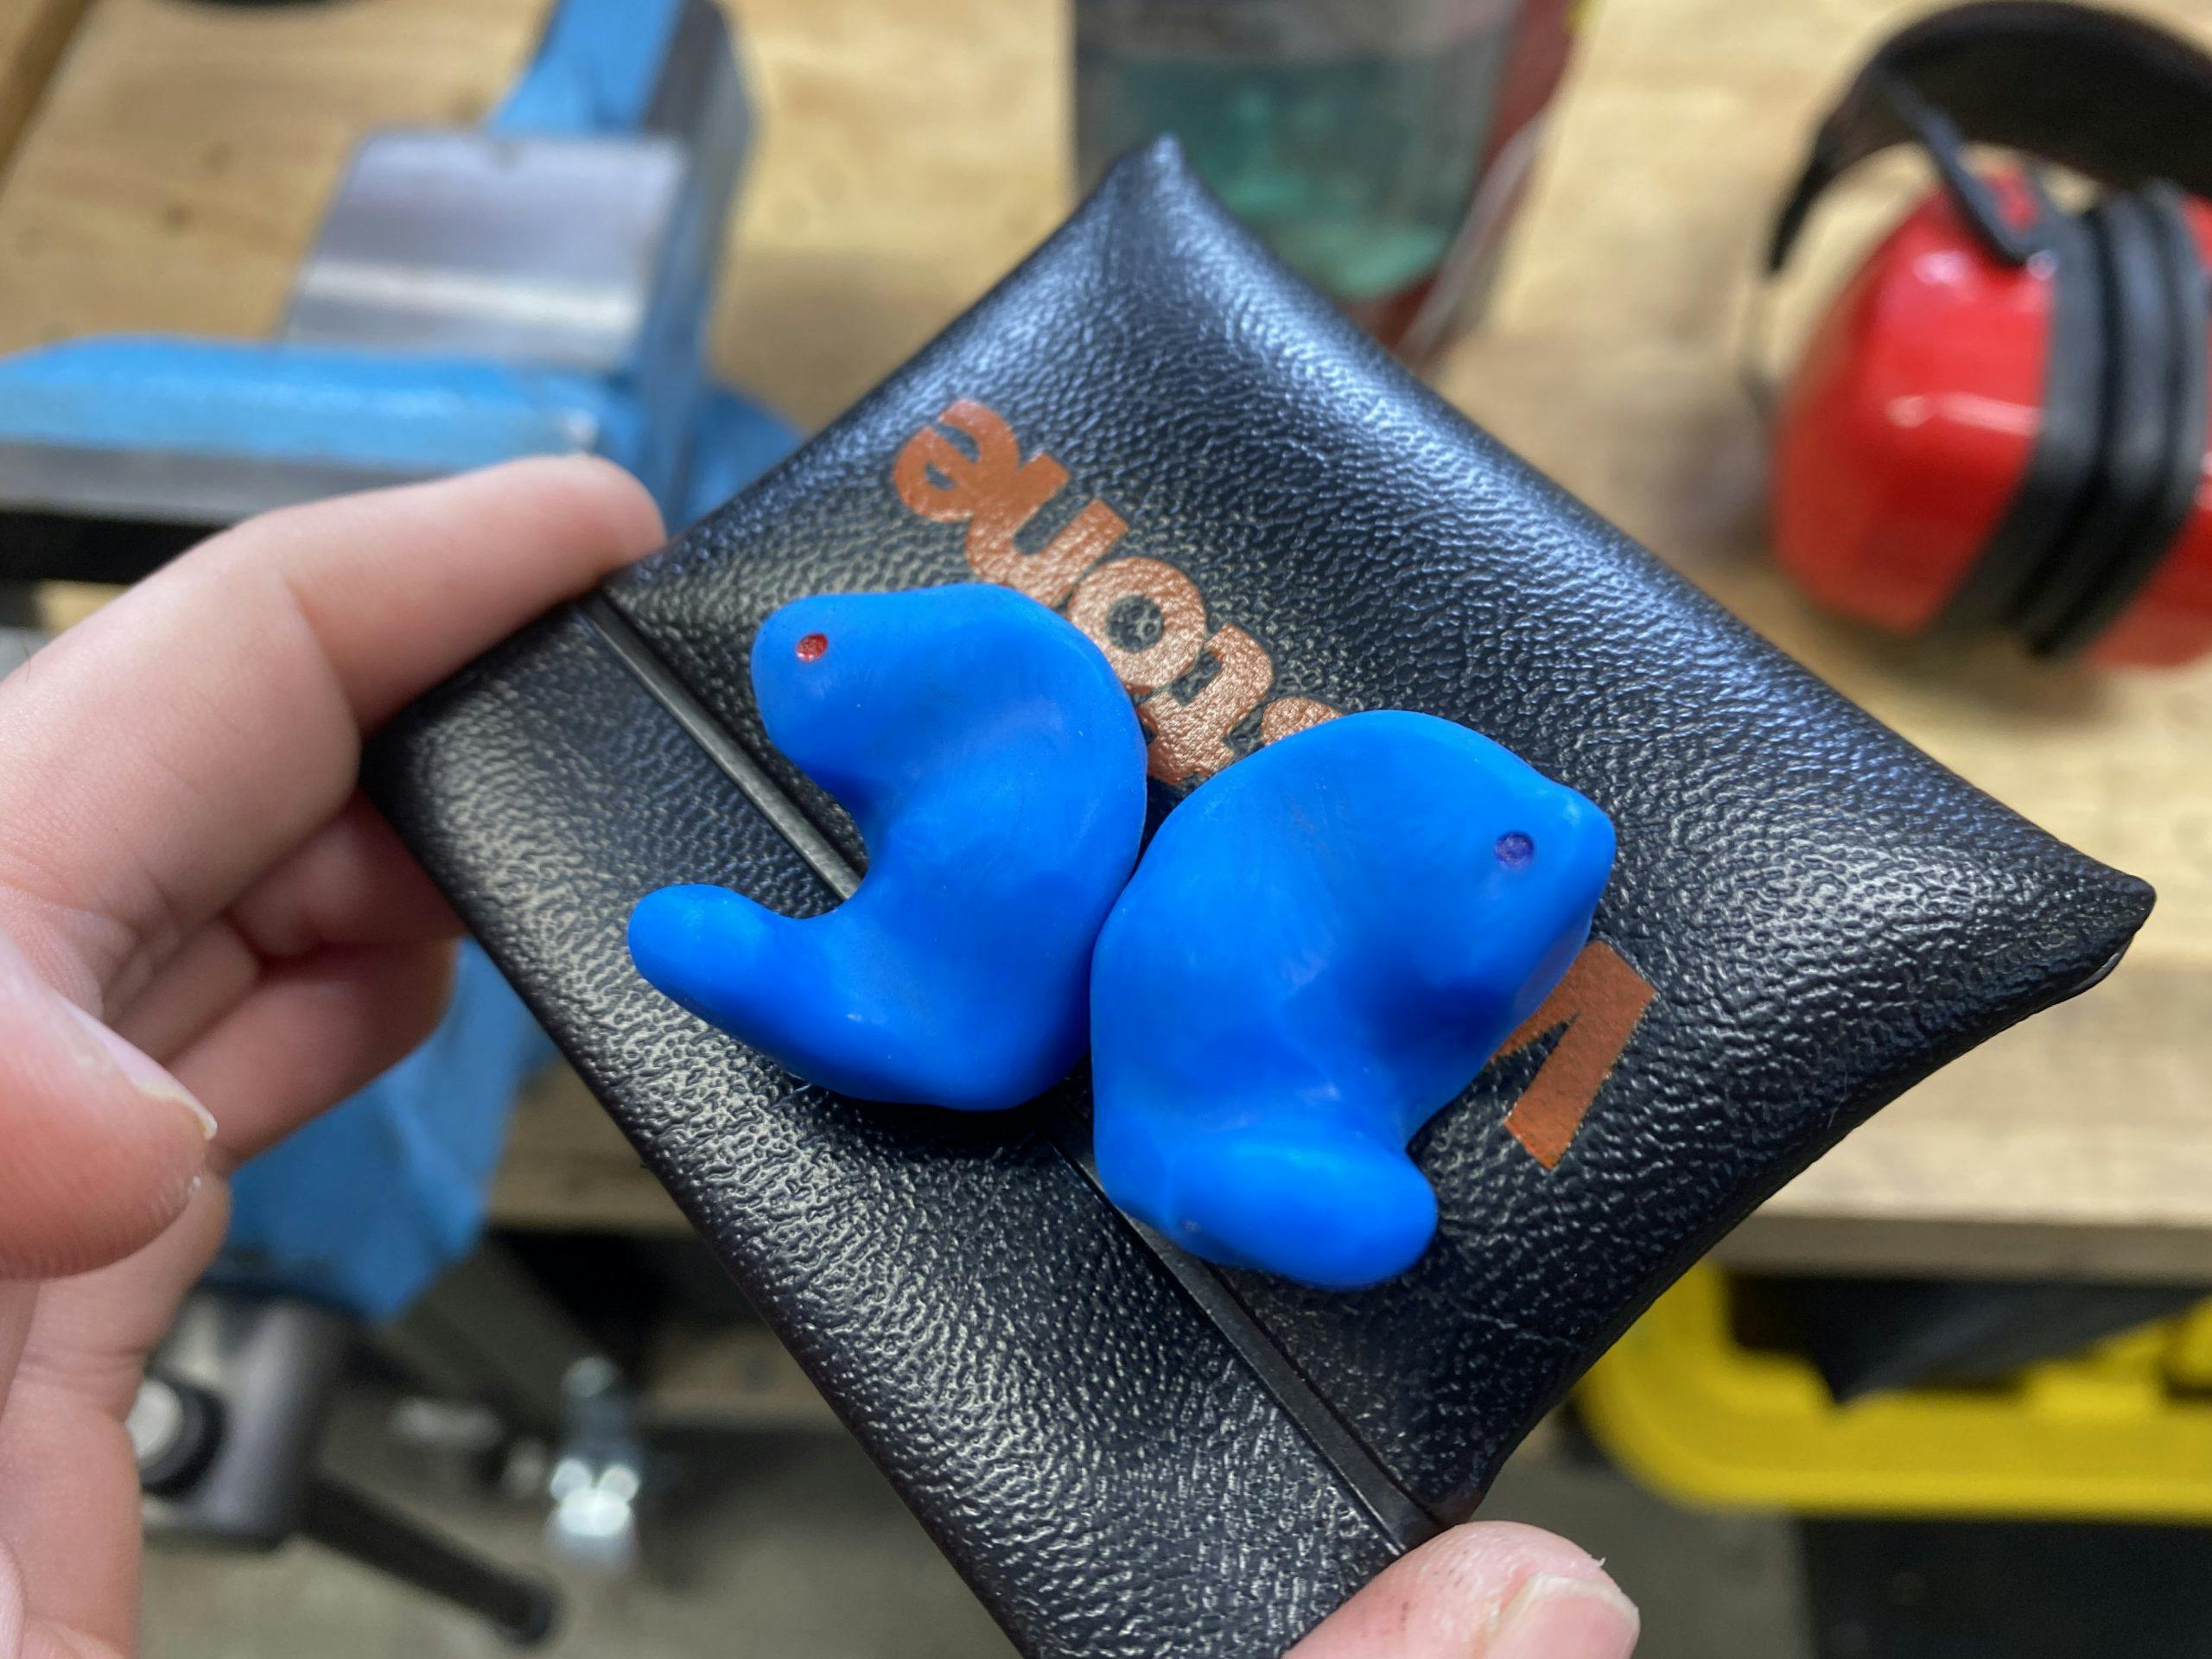 custom earplugs